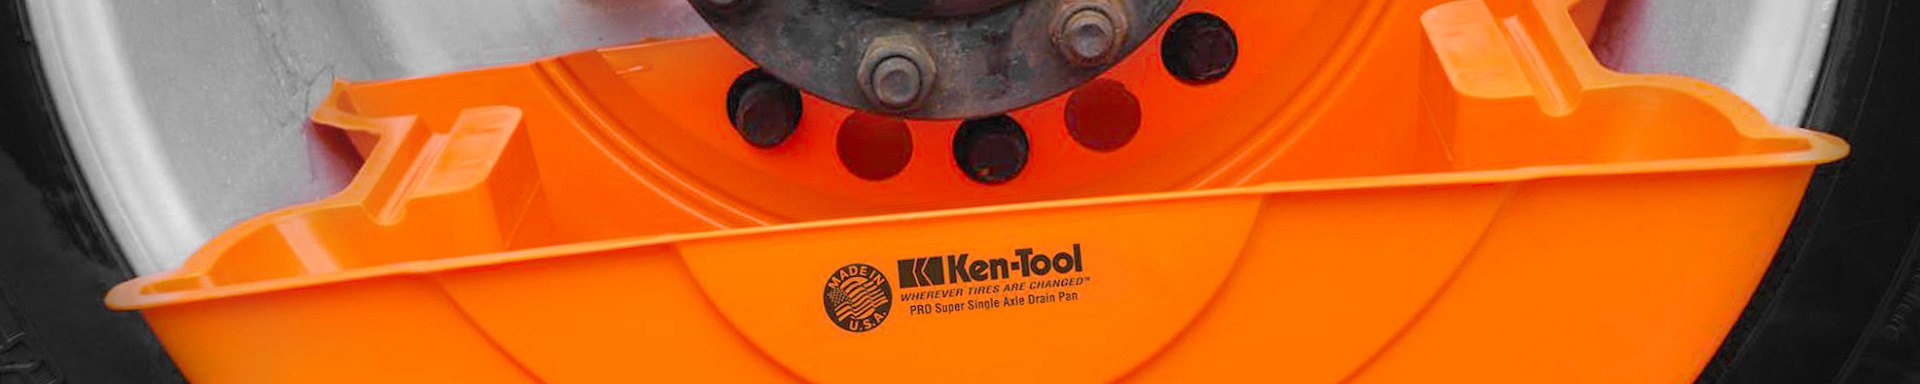 Ken-Tool Pullers & Installers